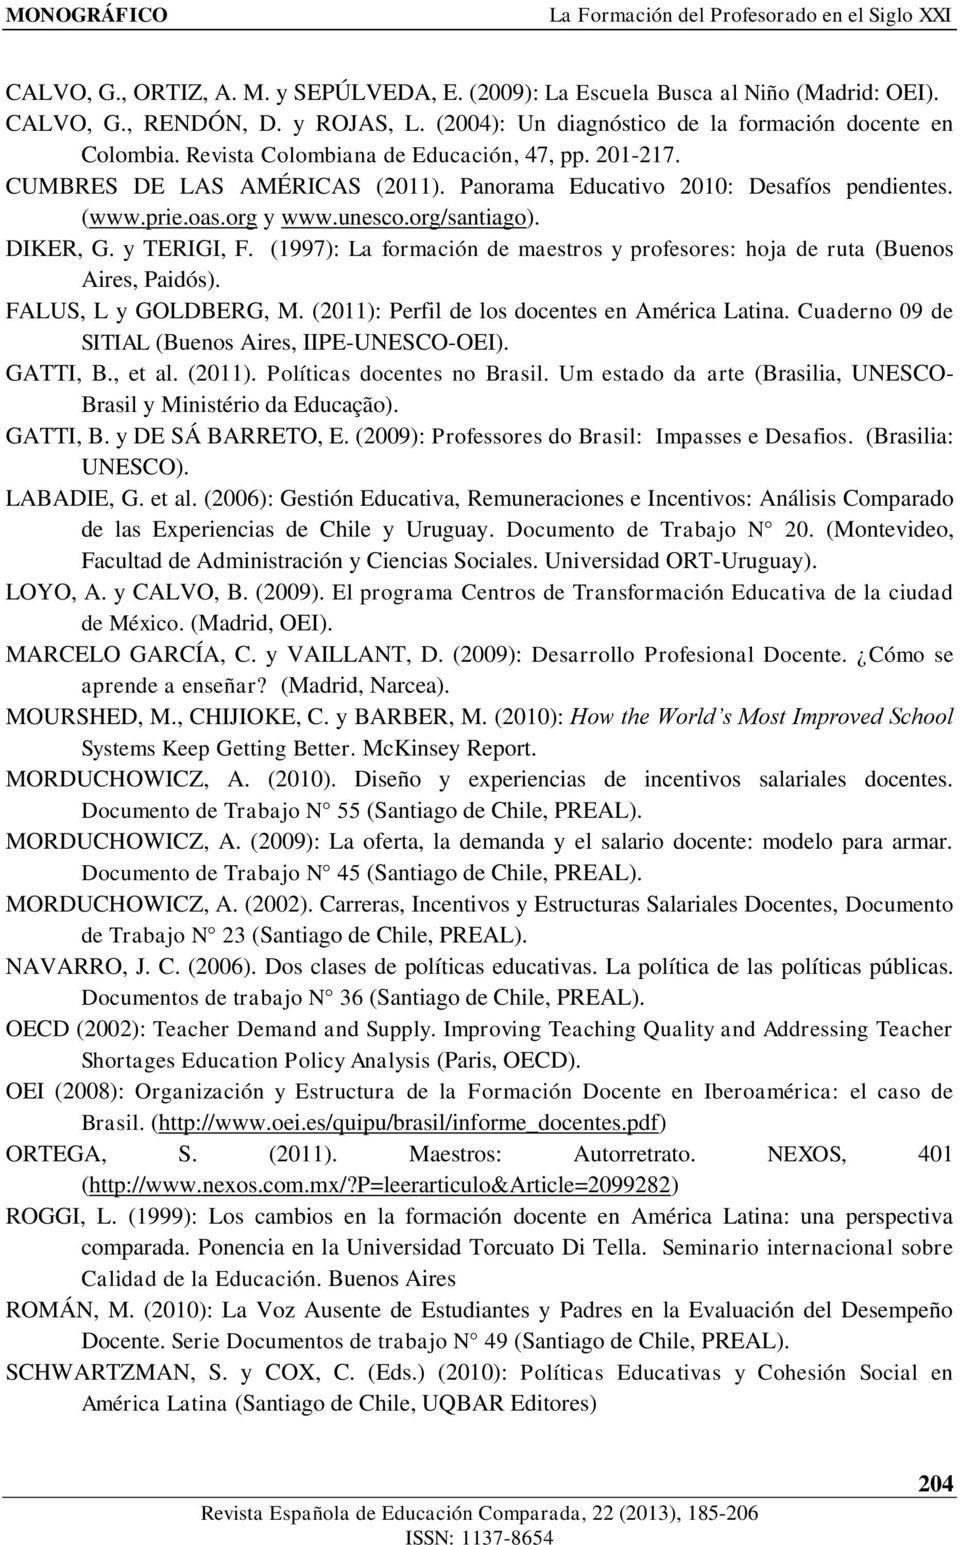 oas.org y www.unesco.org/santiago). DIKER, G. y TERIGI, F. (1997): La formación de maestros y profesores: hoja de ruta (Buenos Aires, Paidós). FALUS, L y GOLDBERG, M.